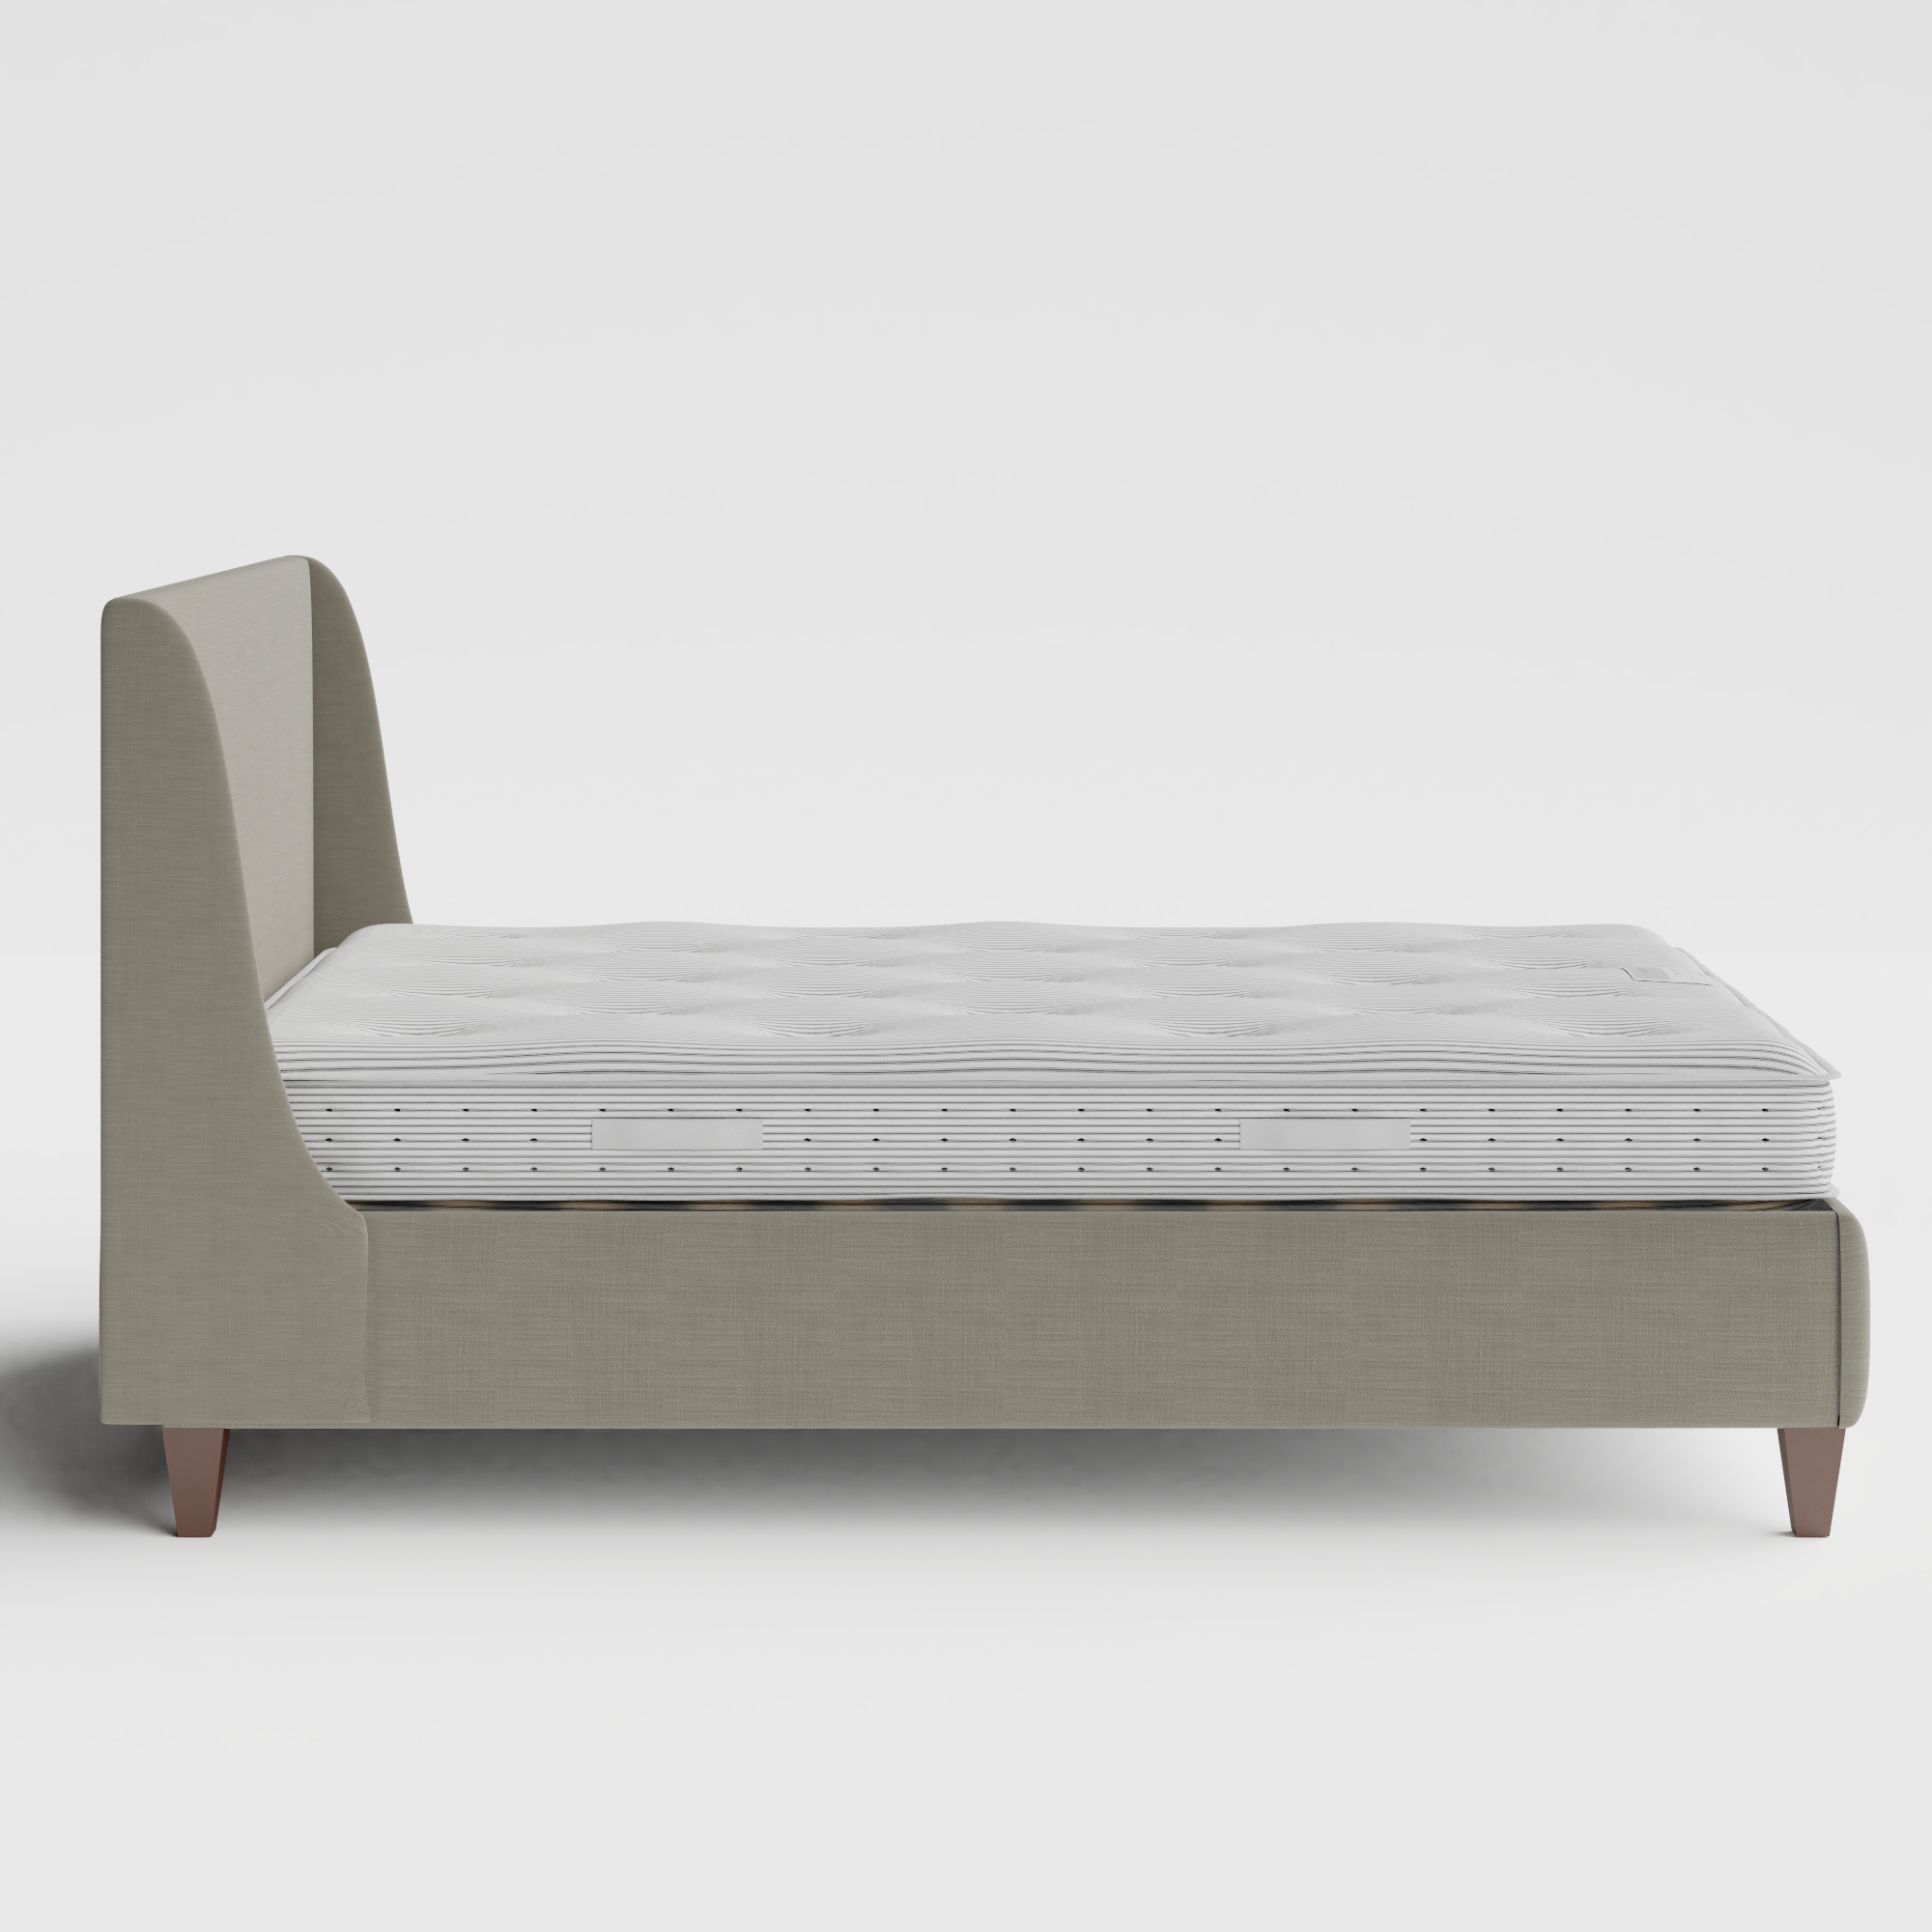 Sunderland cama tapizada en tela gris con colchón